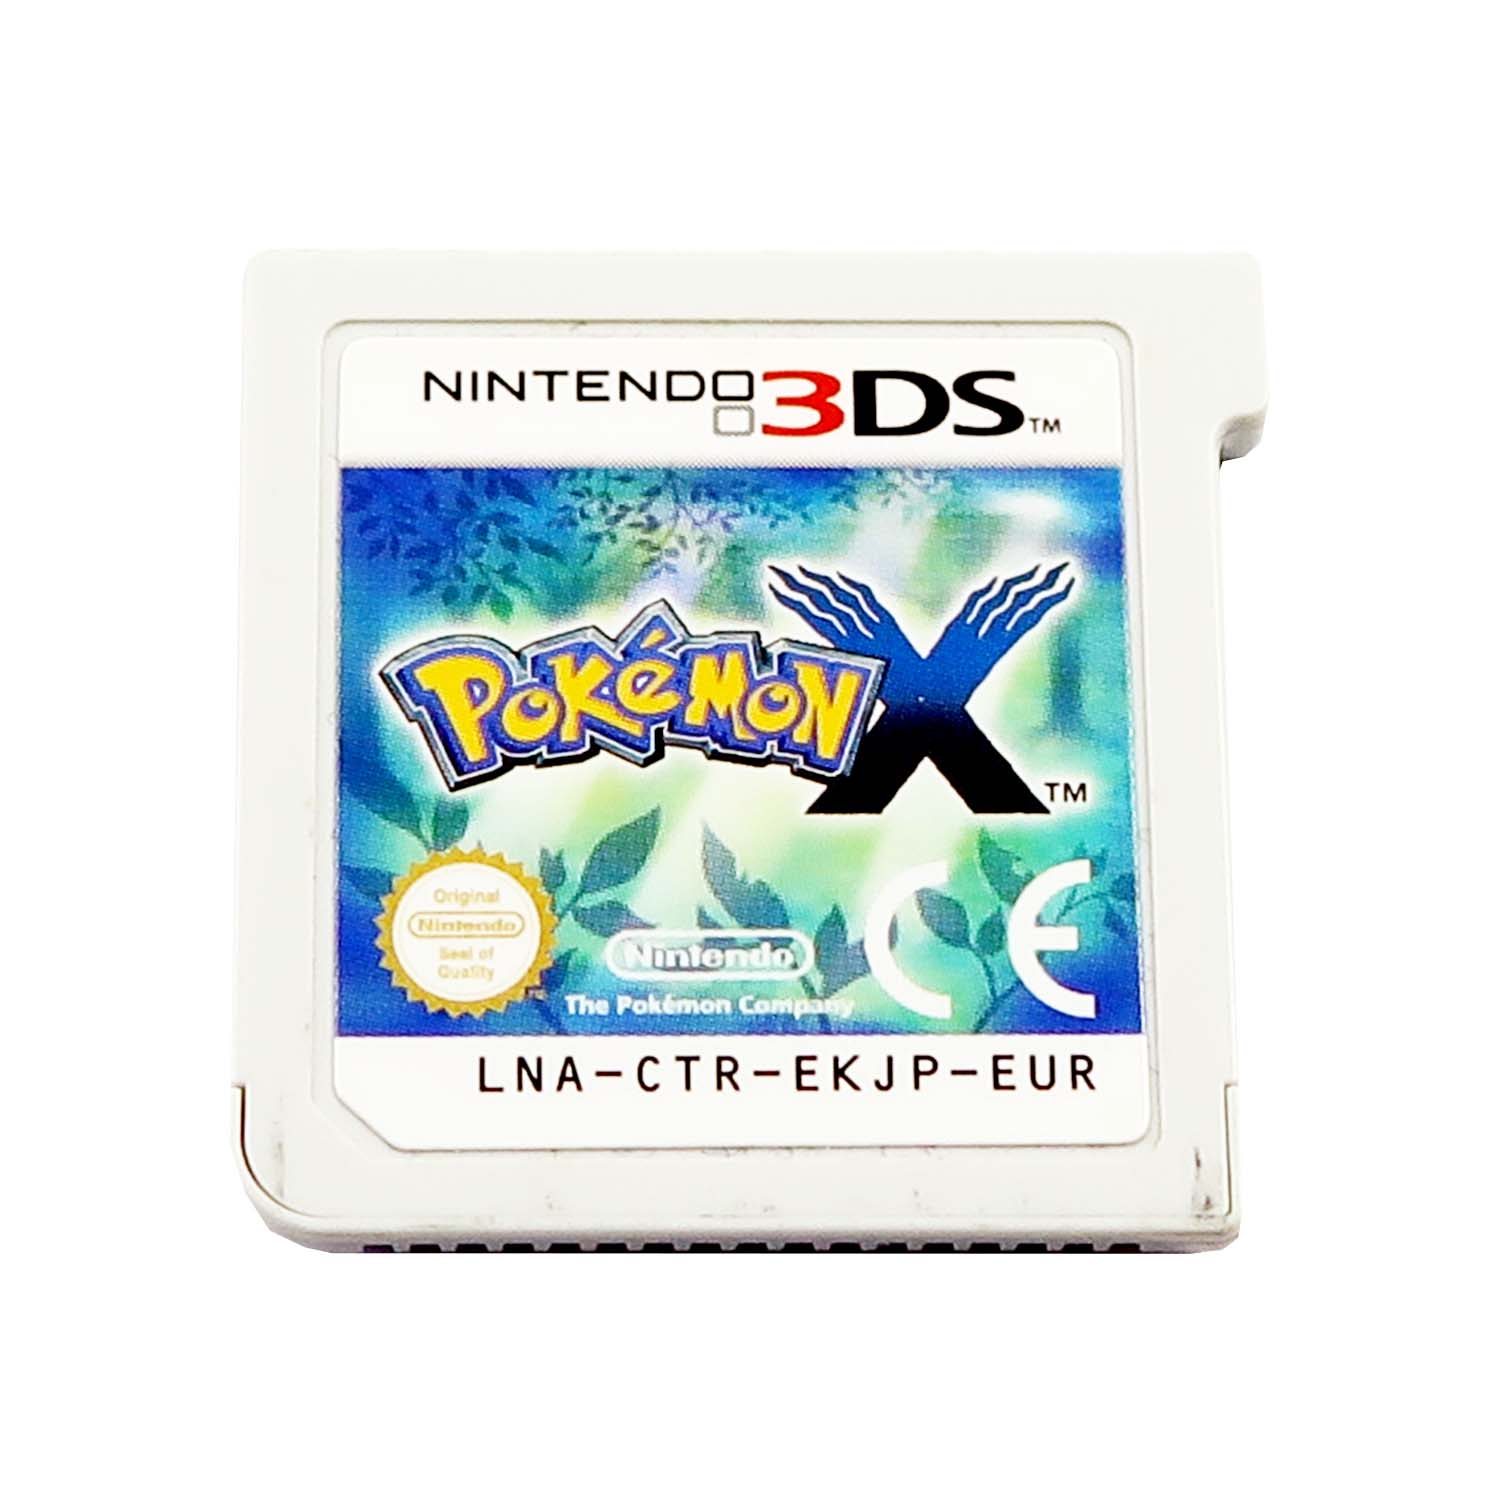 Pokémon X Edition